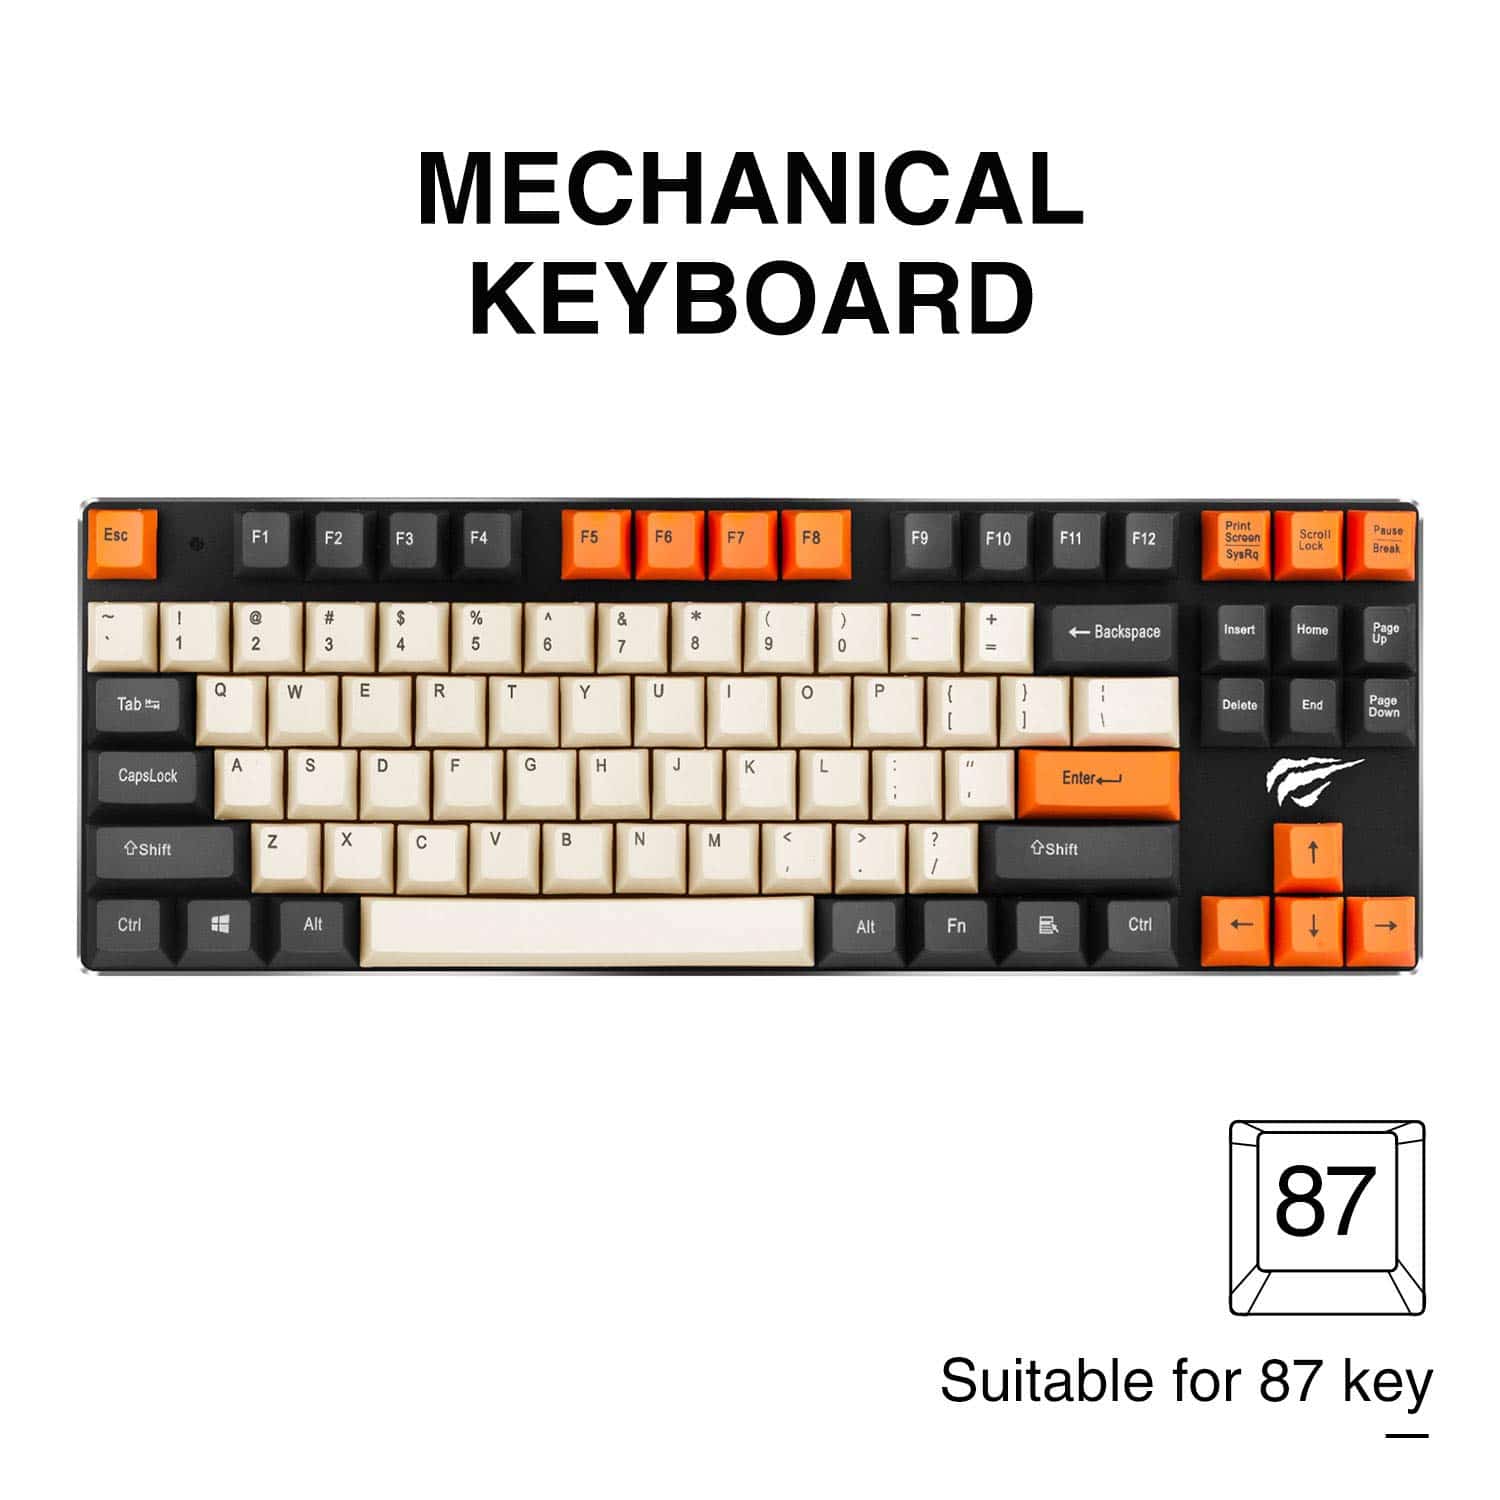 HAVIT KC23 PBT Keycaps 104 Клавиши со съемником для механической клавиатуры Cherry MX (Черный , белый и Оранжевый)